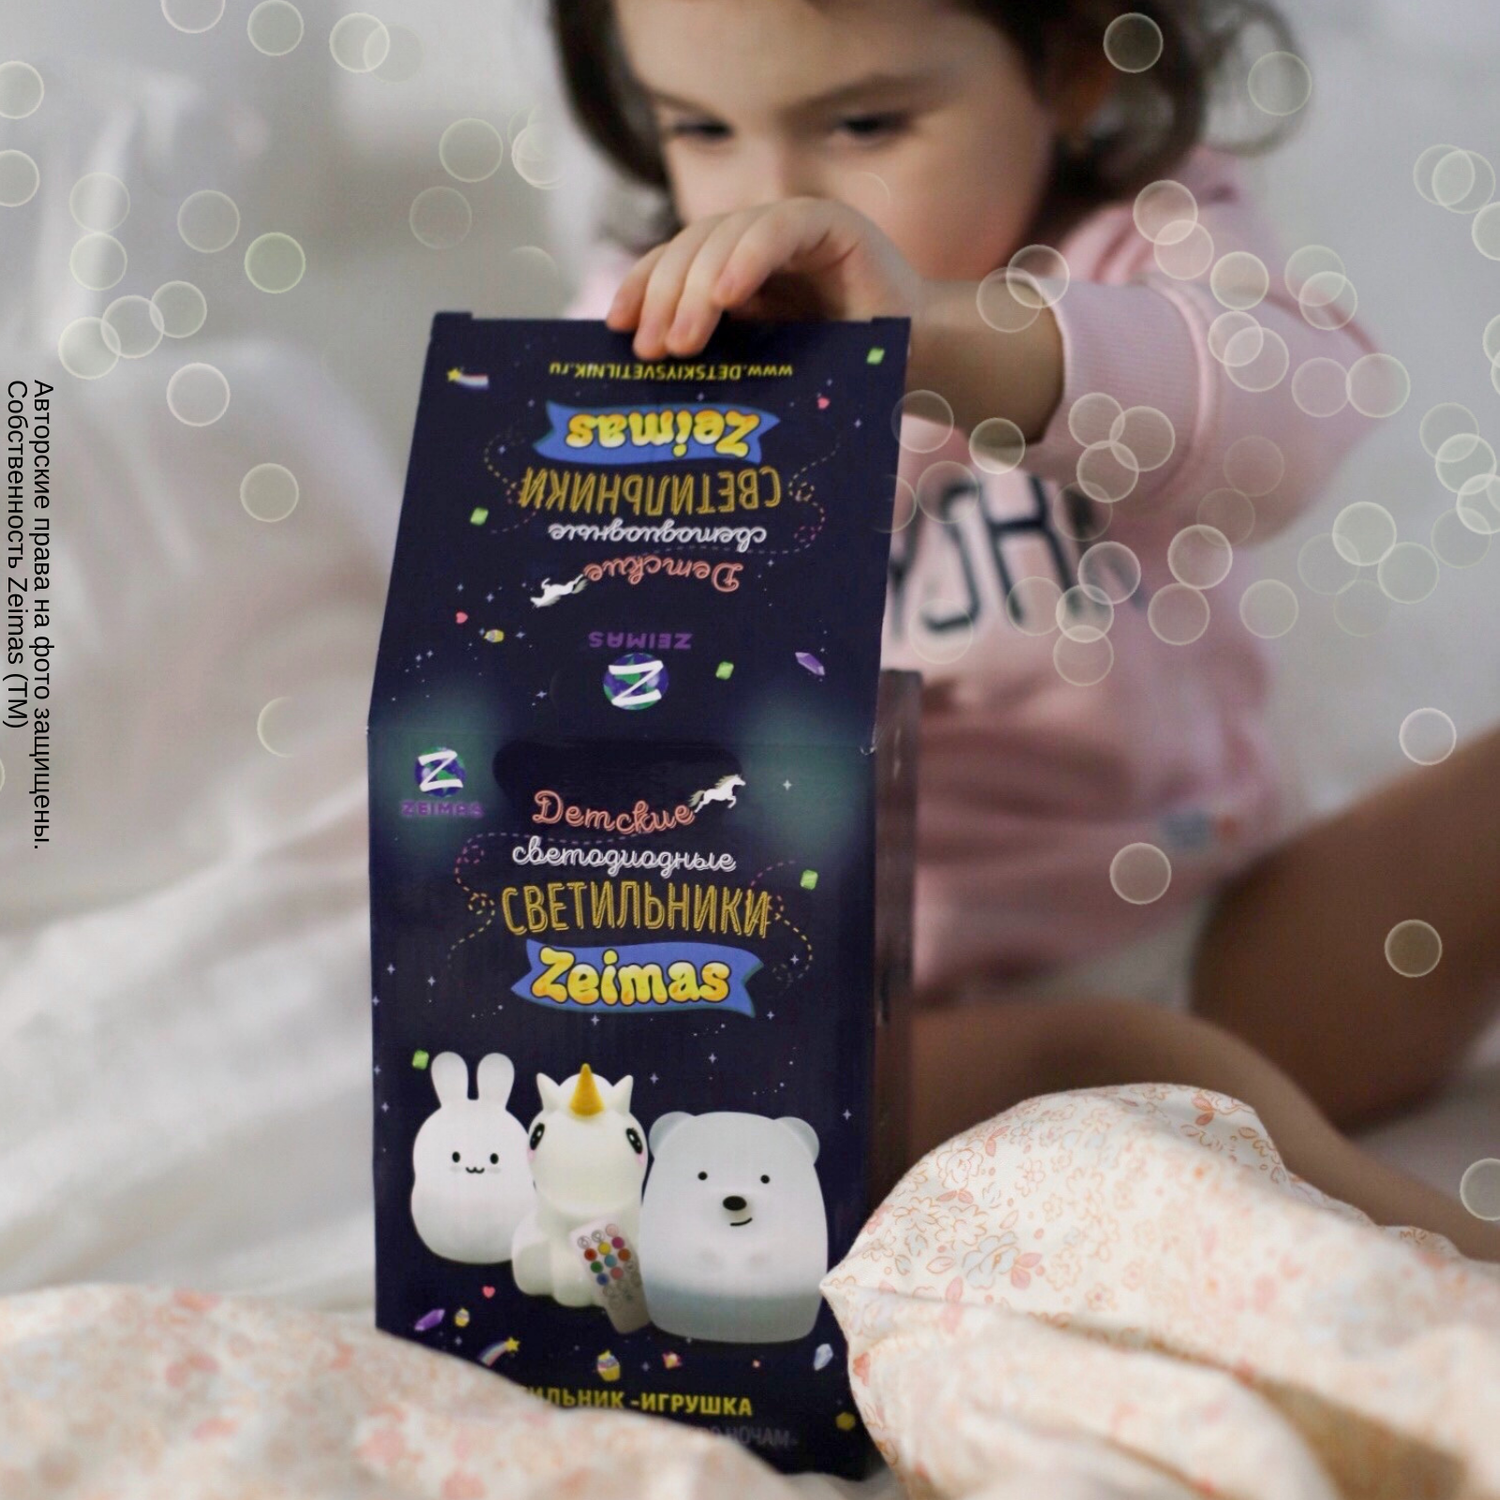 Ночник детский силиконовый Zeimas светильник развивающая игрушка Зайчик с пультом подарок ребенку - фото 16